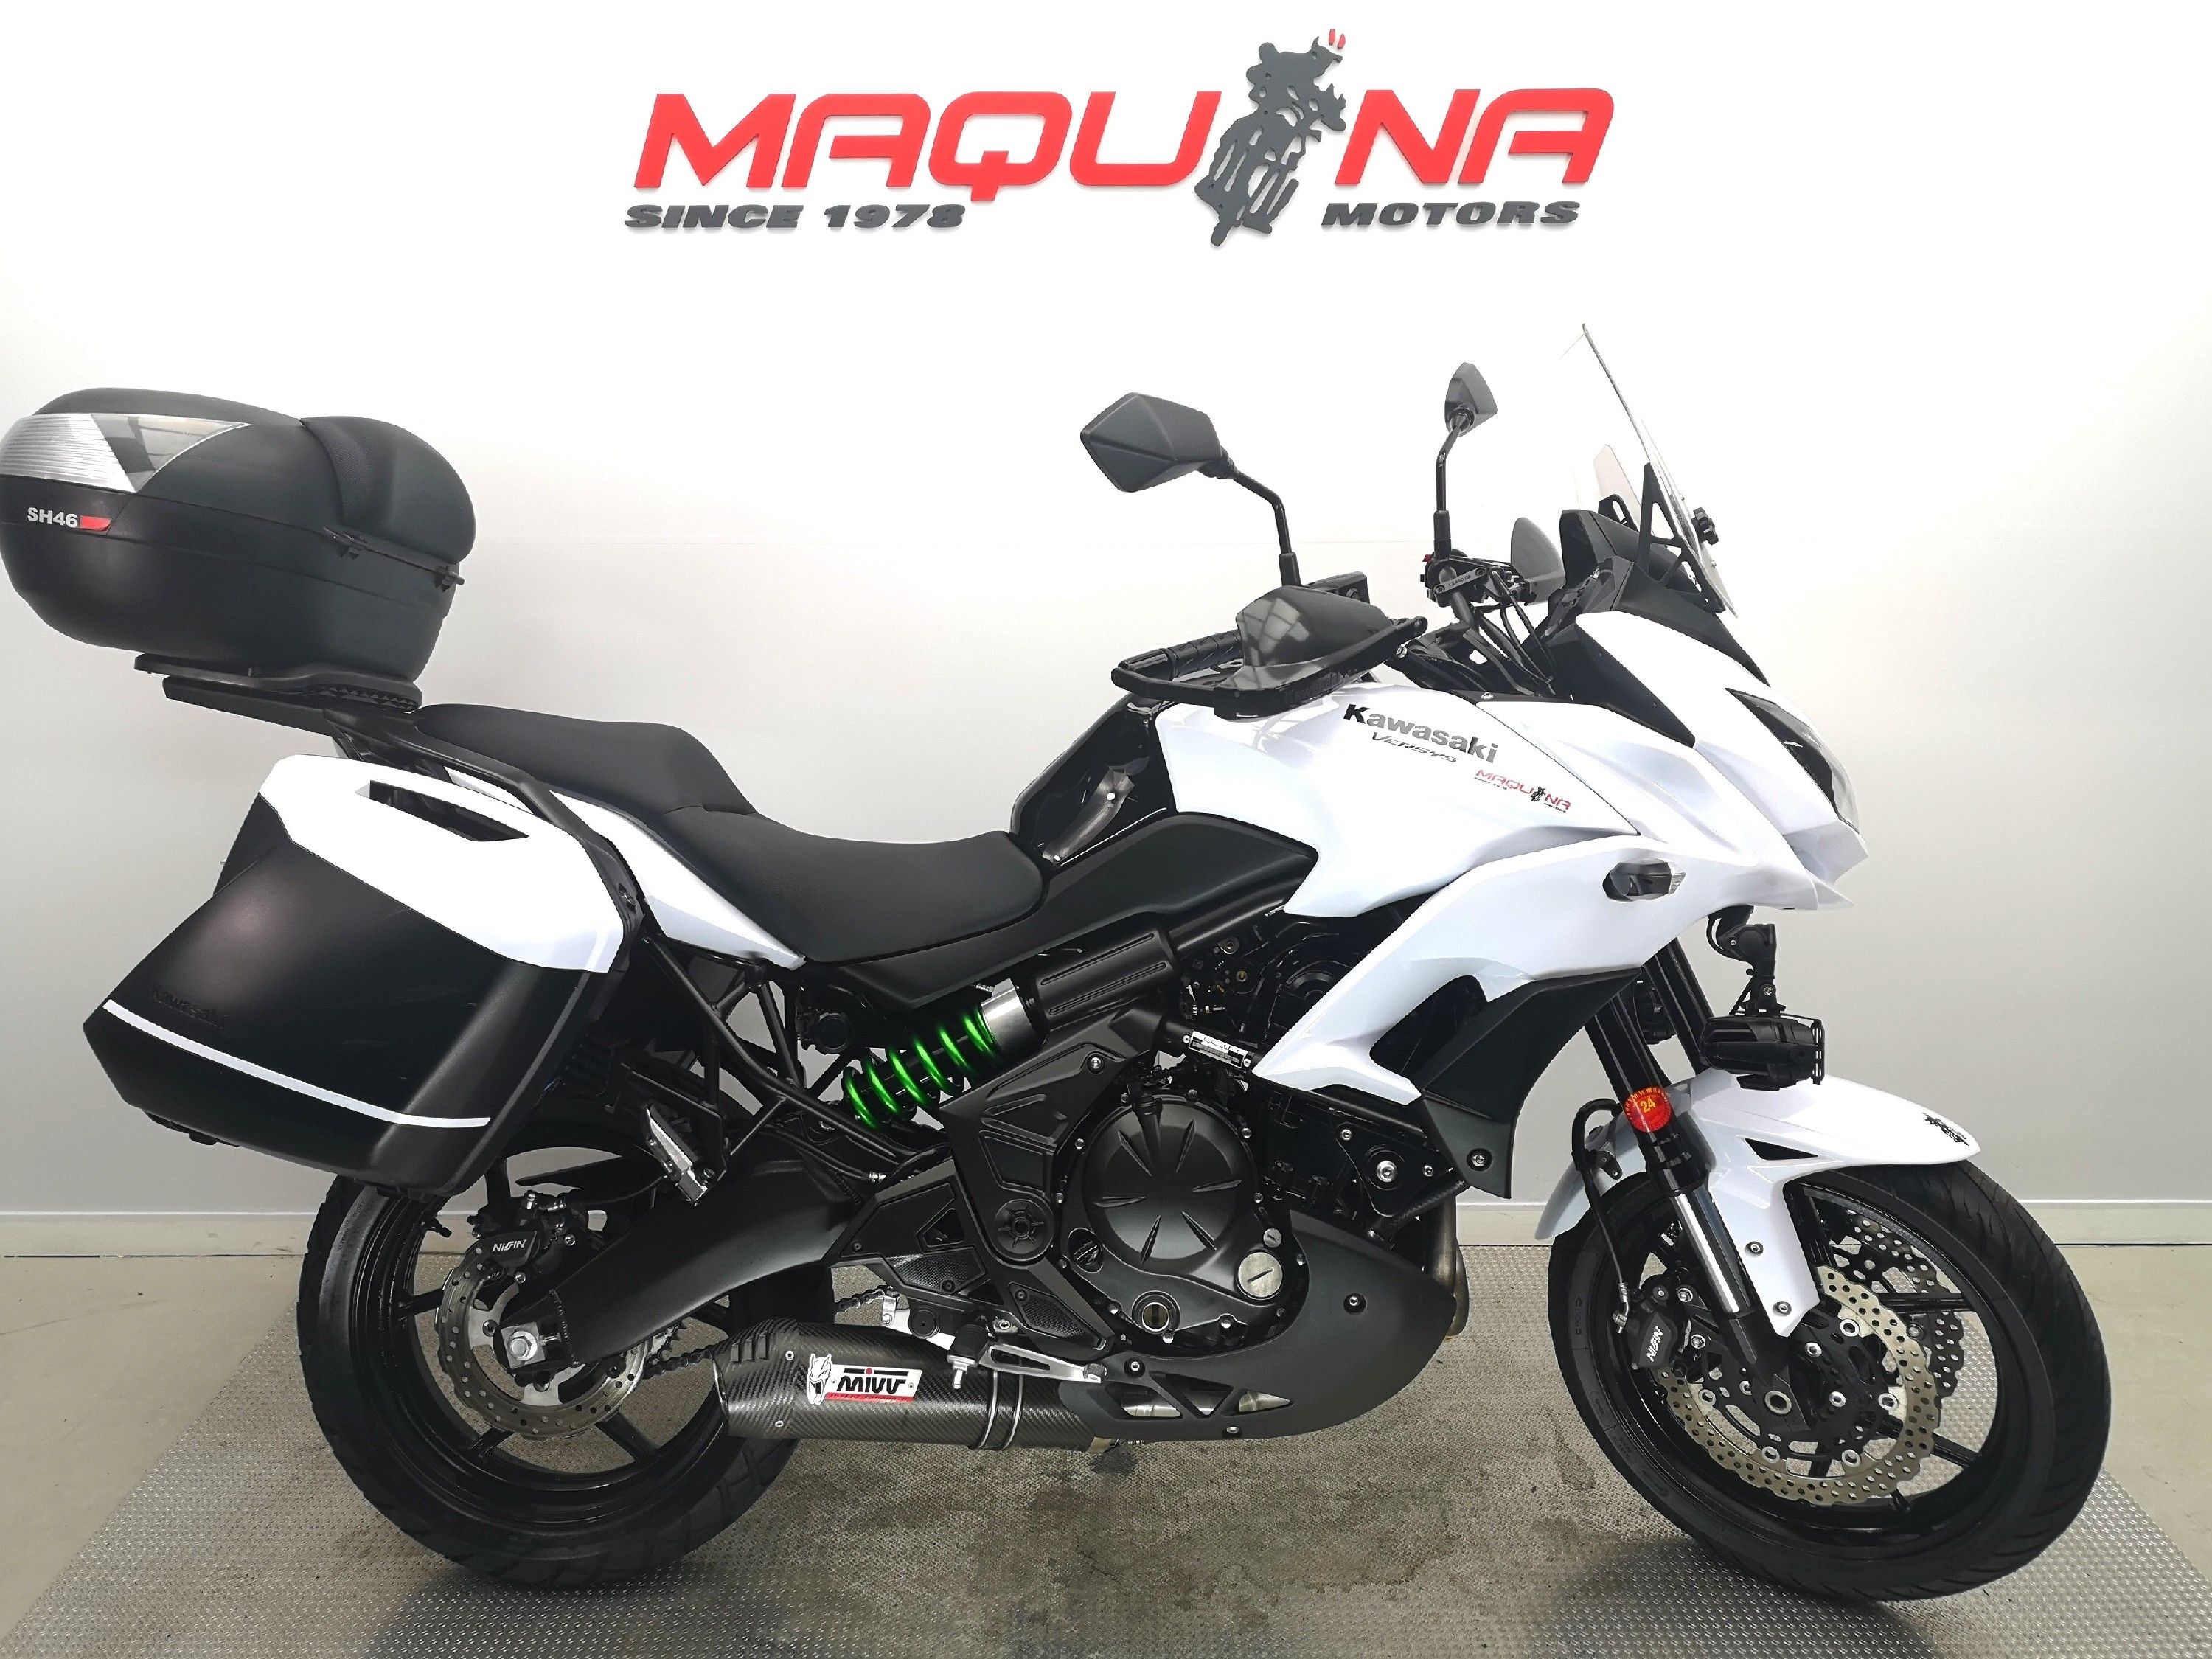 KAWASAKI VERSYS 650 – Maquina Motors motos